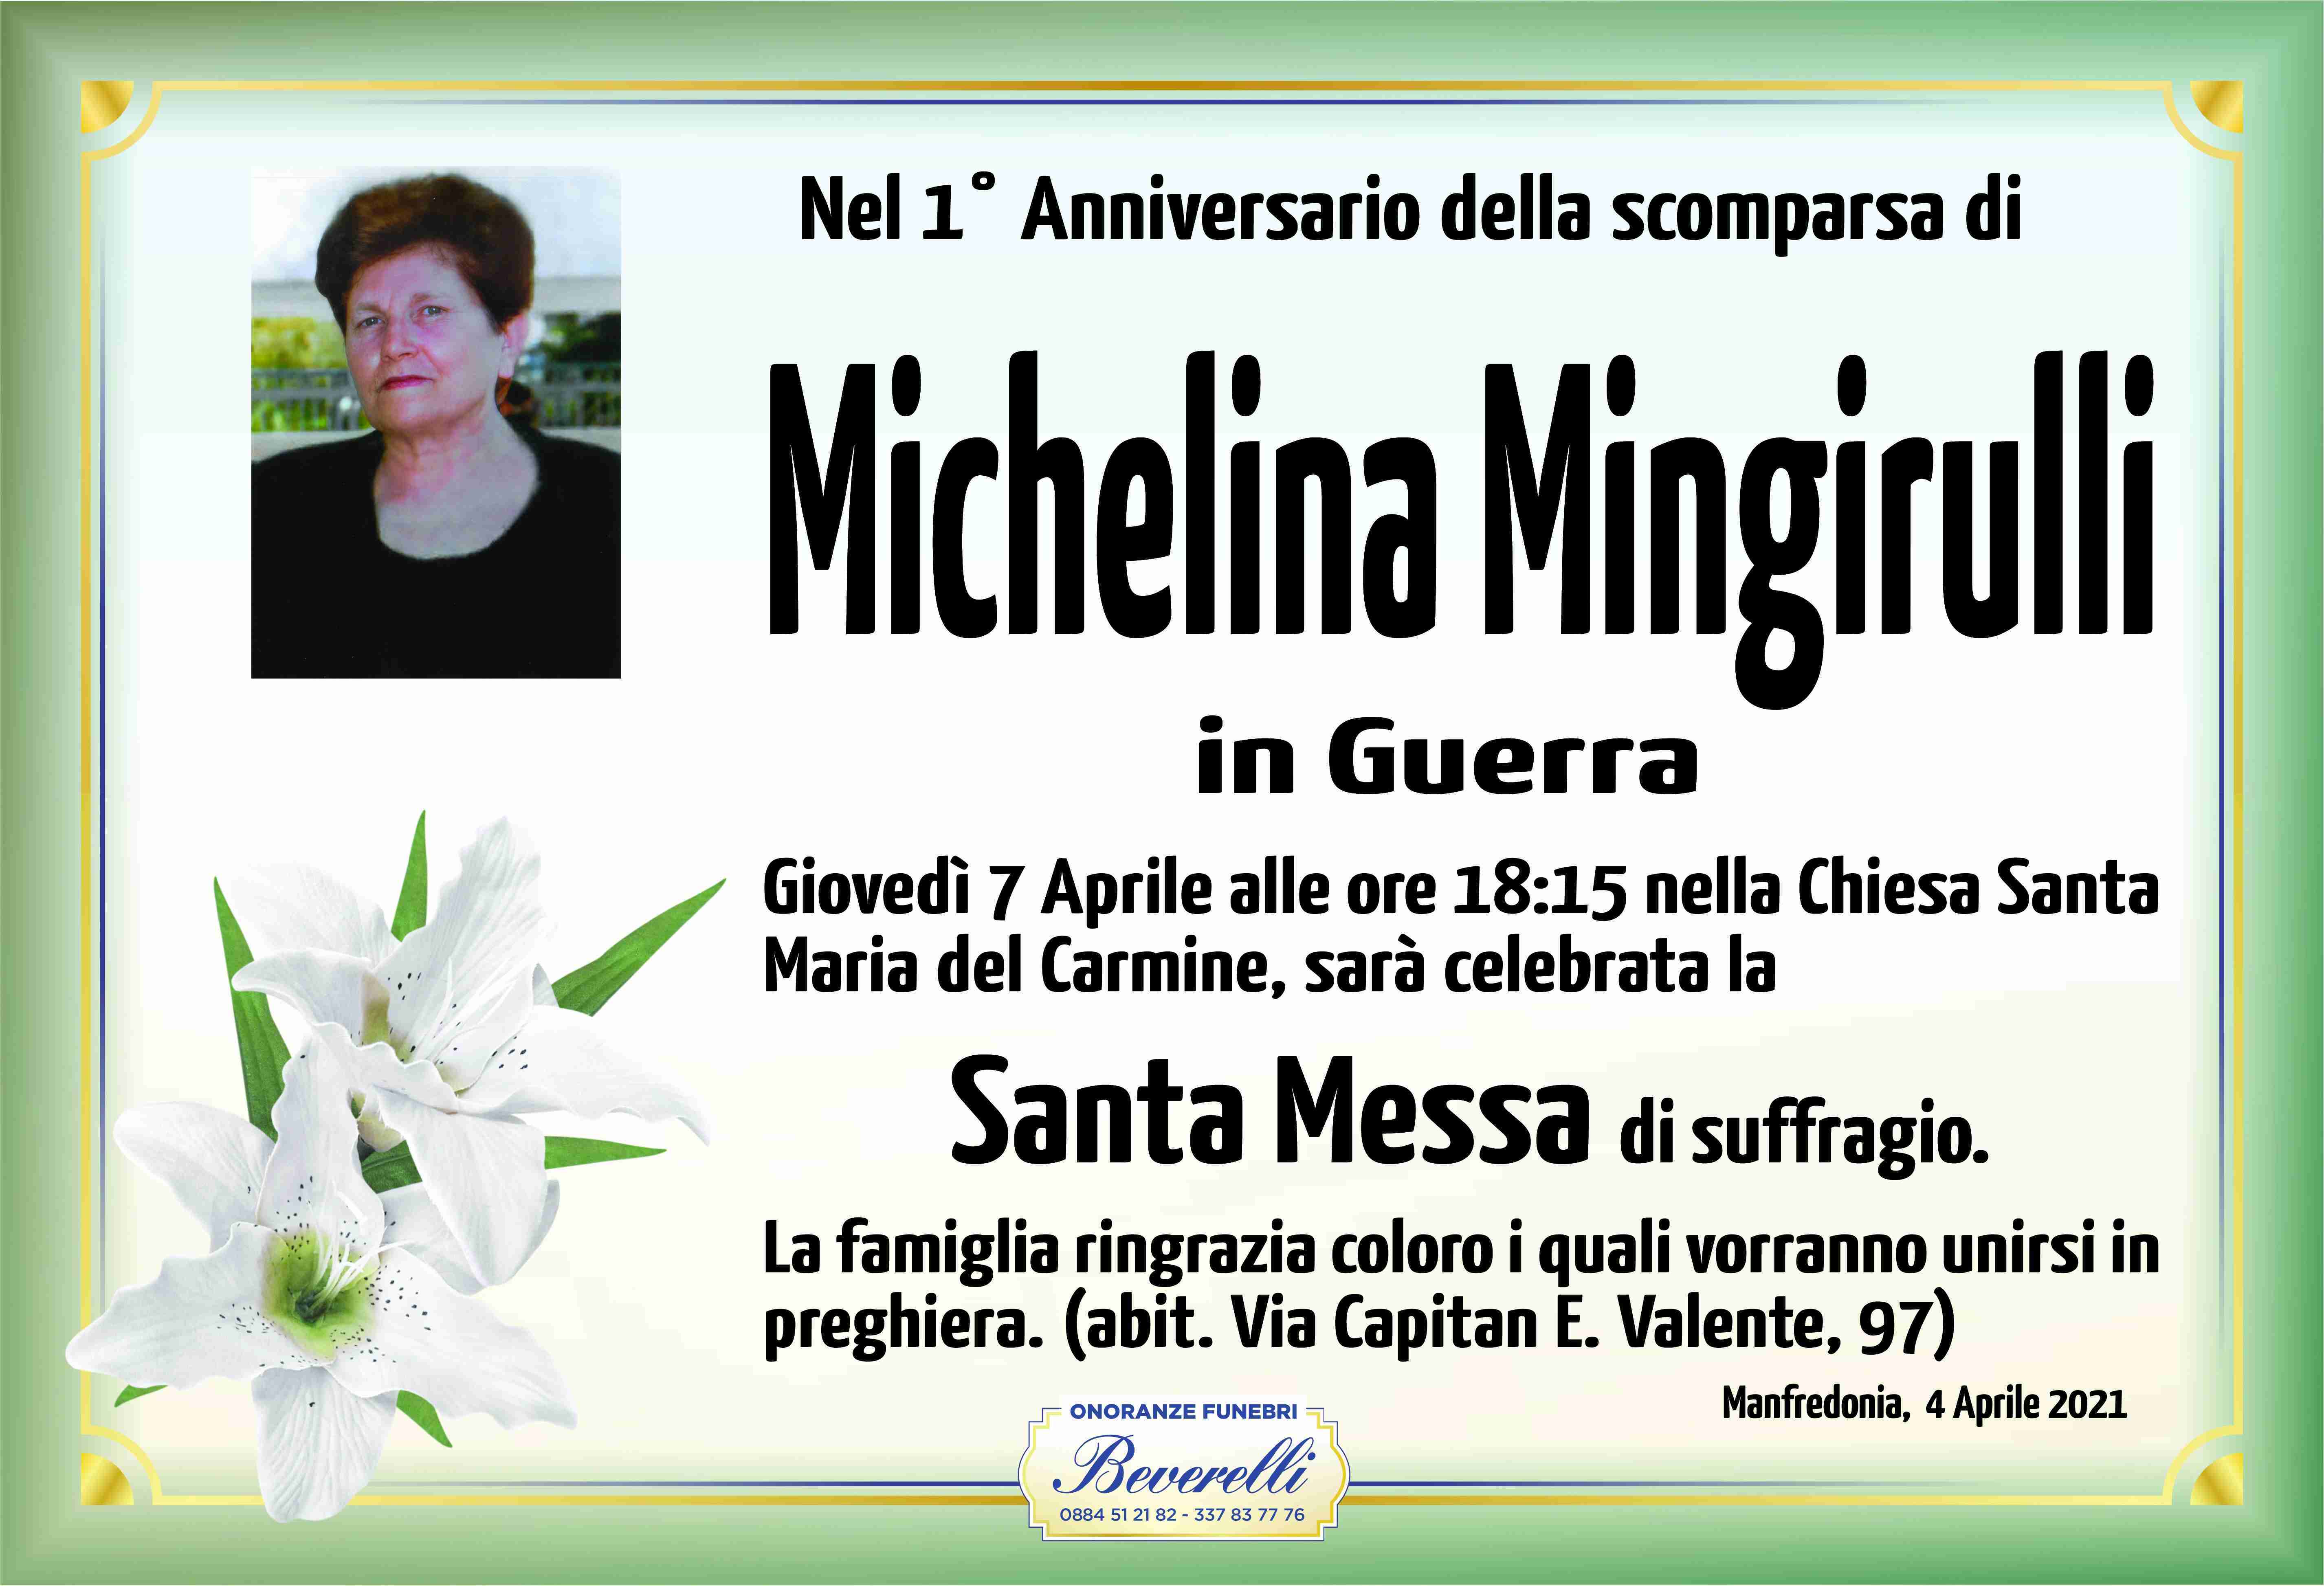 Michelina Mingirulli